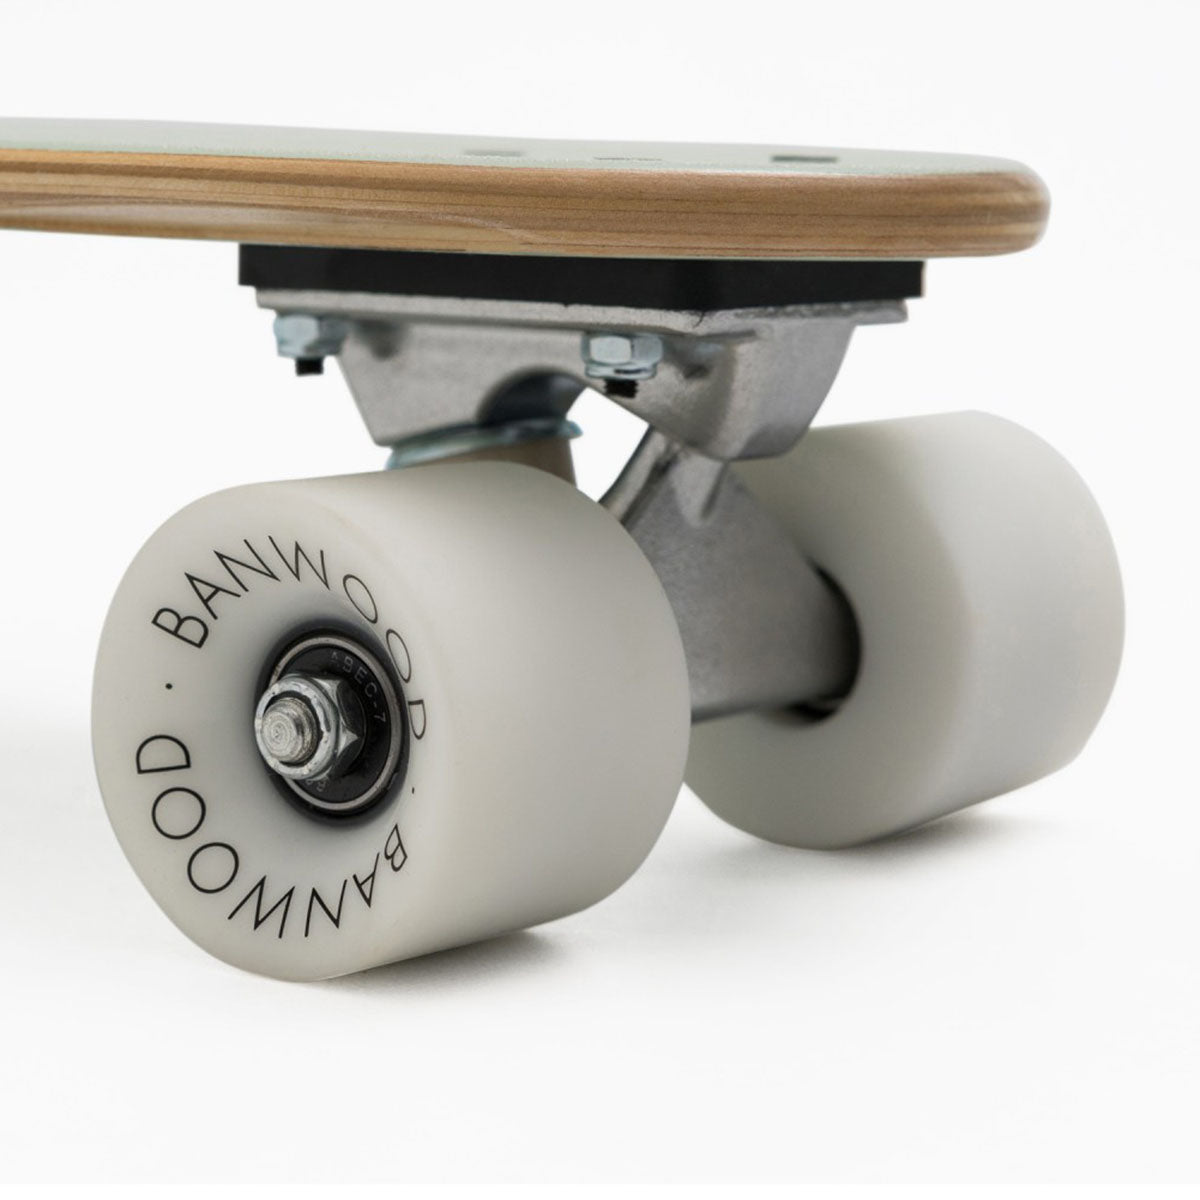 Voor stoere kinderen is dit toffe Banwood skateboard in mint ideaal! Dit skateboard is een klein cruiserboard, speciaal ontworpen voor zowel beginners als gevorderde skateboarders. VanZus